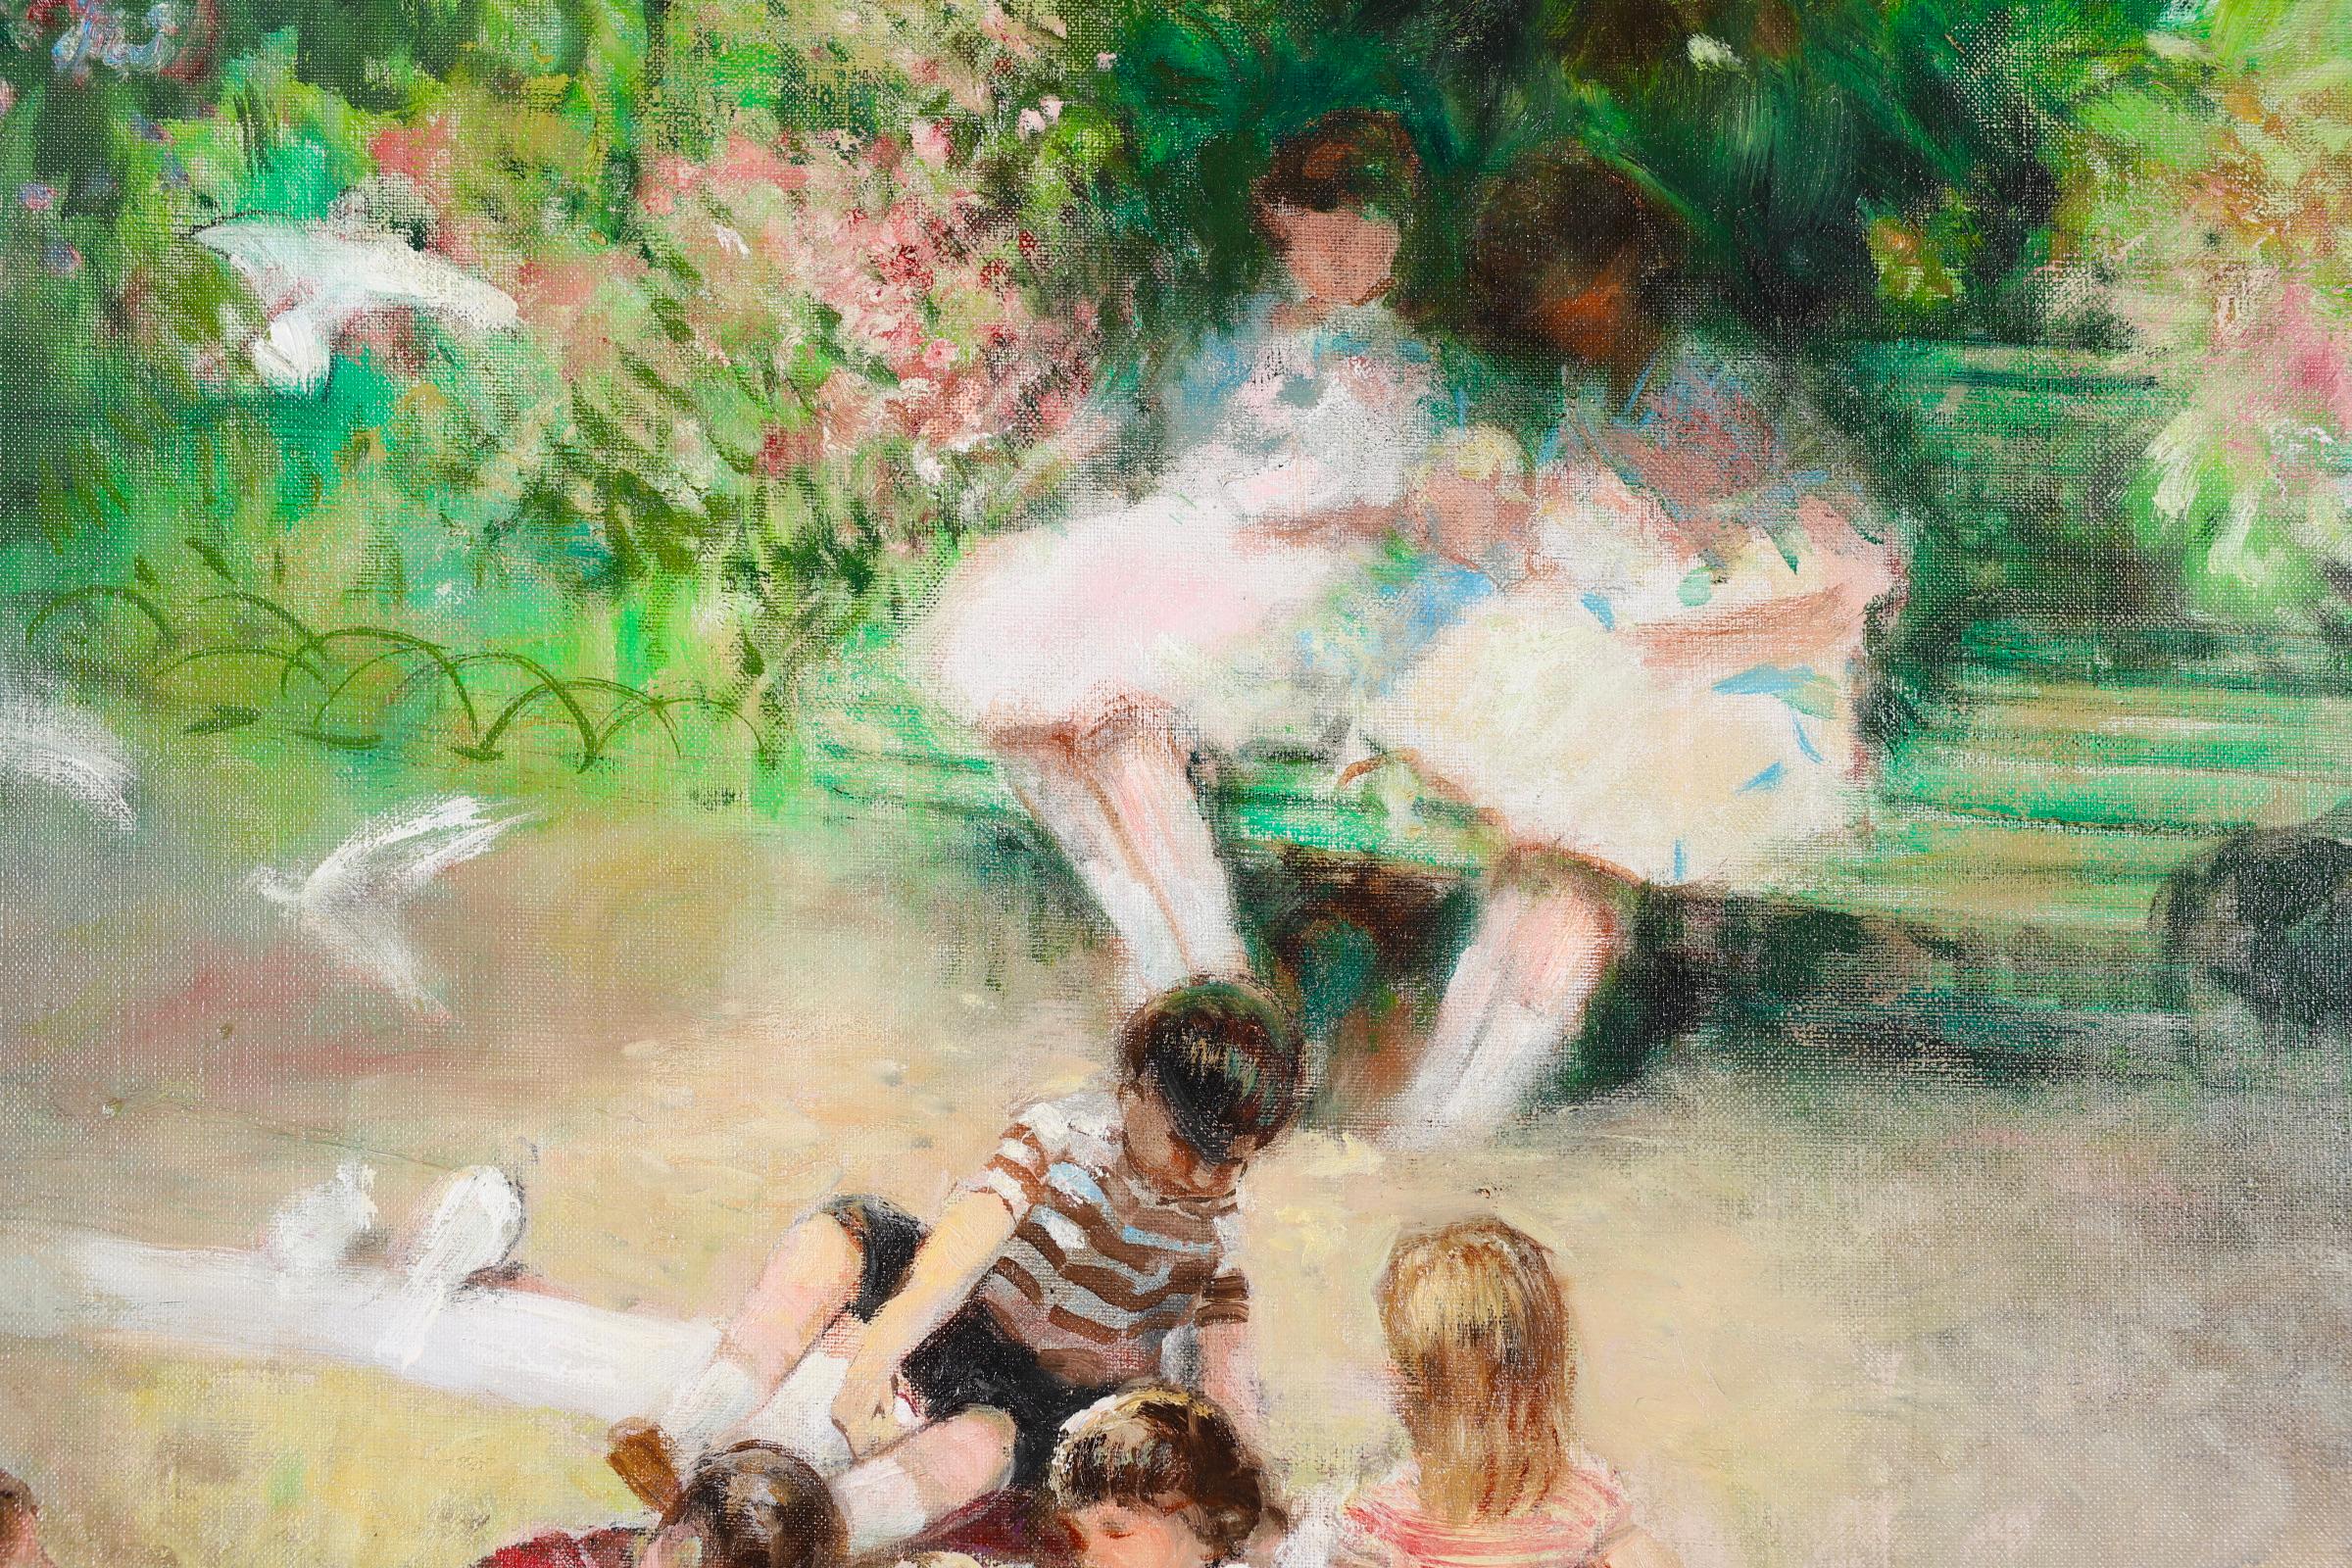 Le bac a sable - Impressionistisches figuratives Ölgemälde von Jules Rene Herve (Impressionismus), Painting, von Jules René Hervé